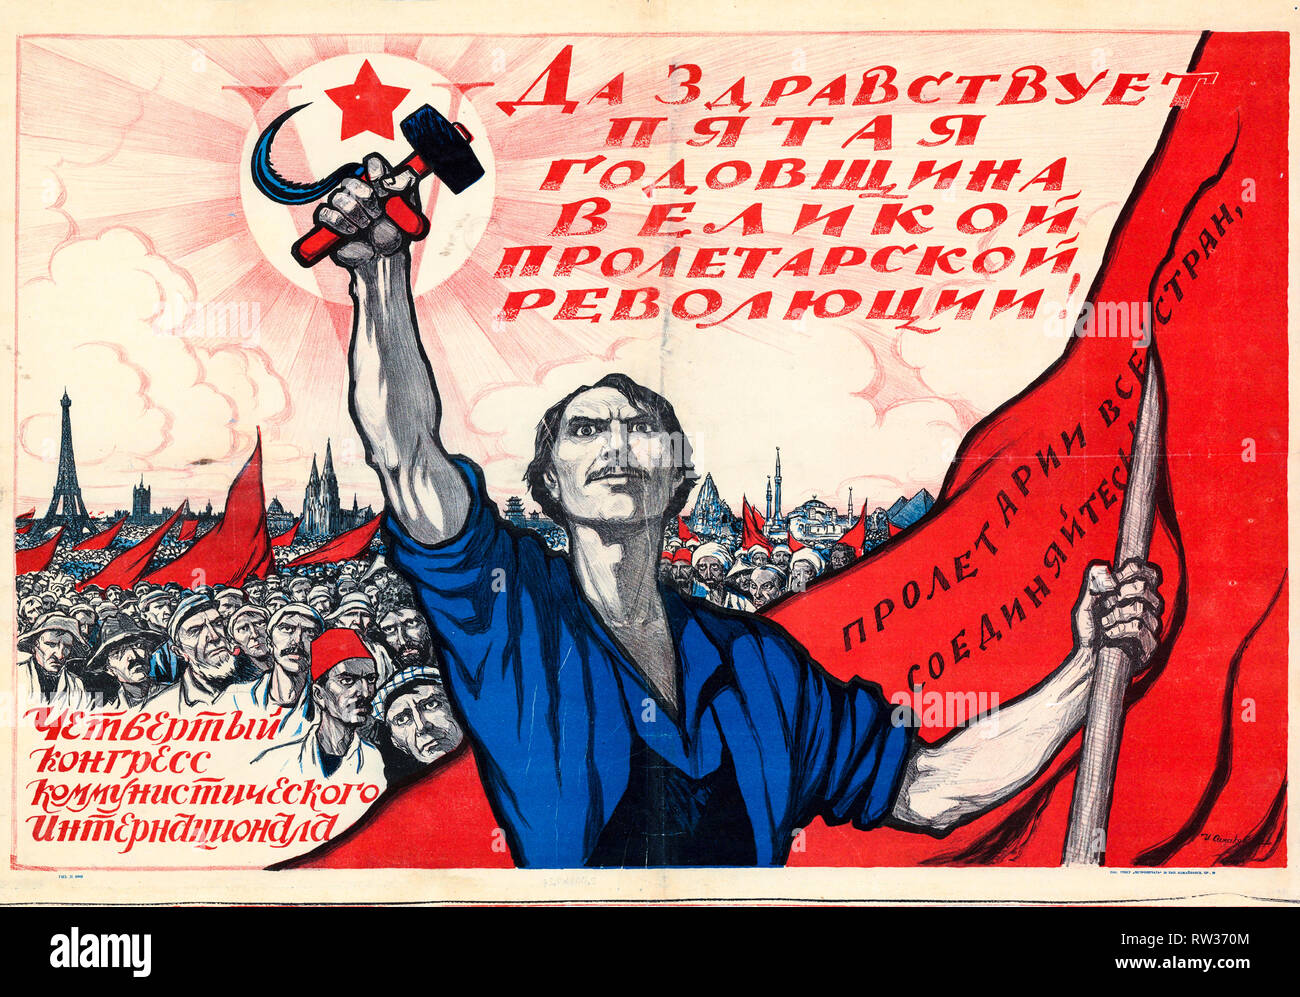 Poster sovietica dedicata al quinto anniversario della Rivoluzione di Ottobre e il quarto congresso della Internazionale comunista, 1922 Foto Stock